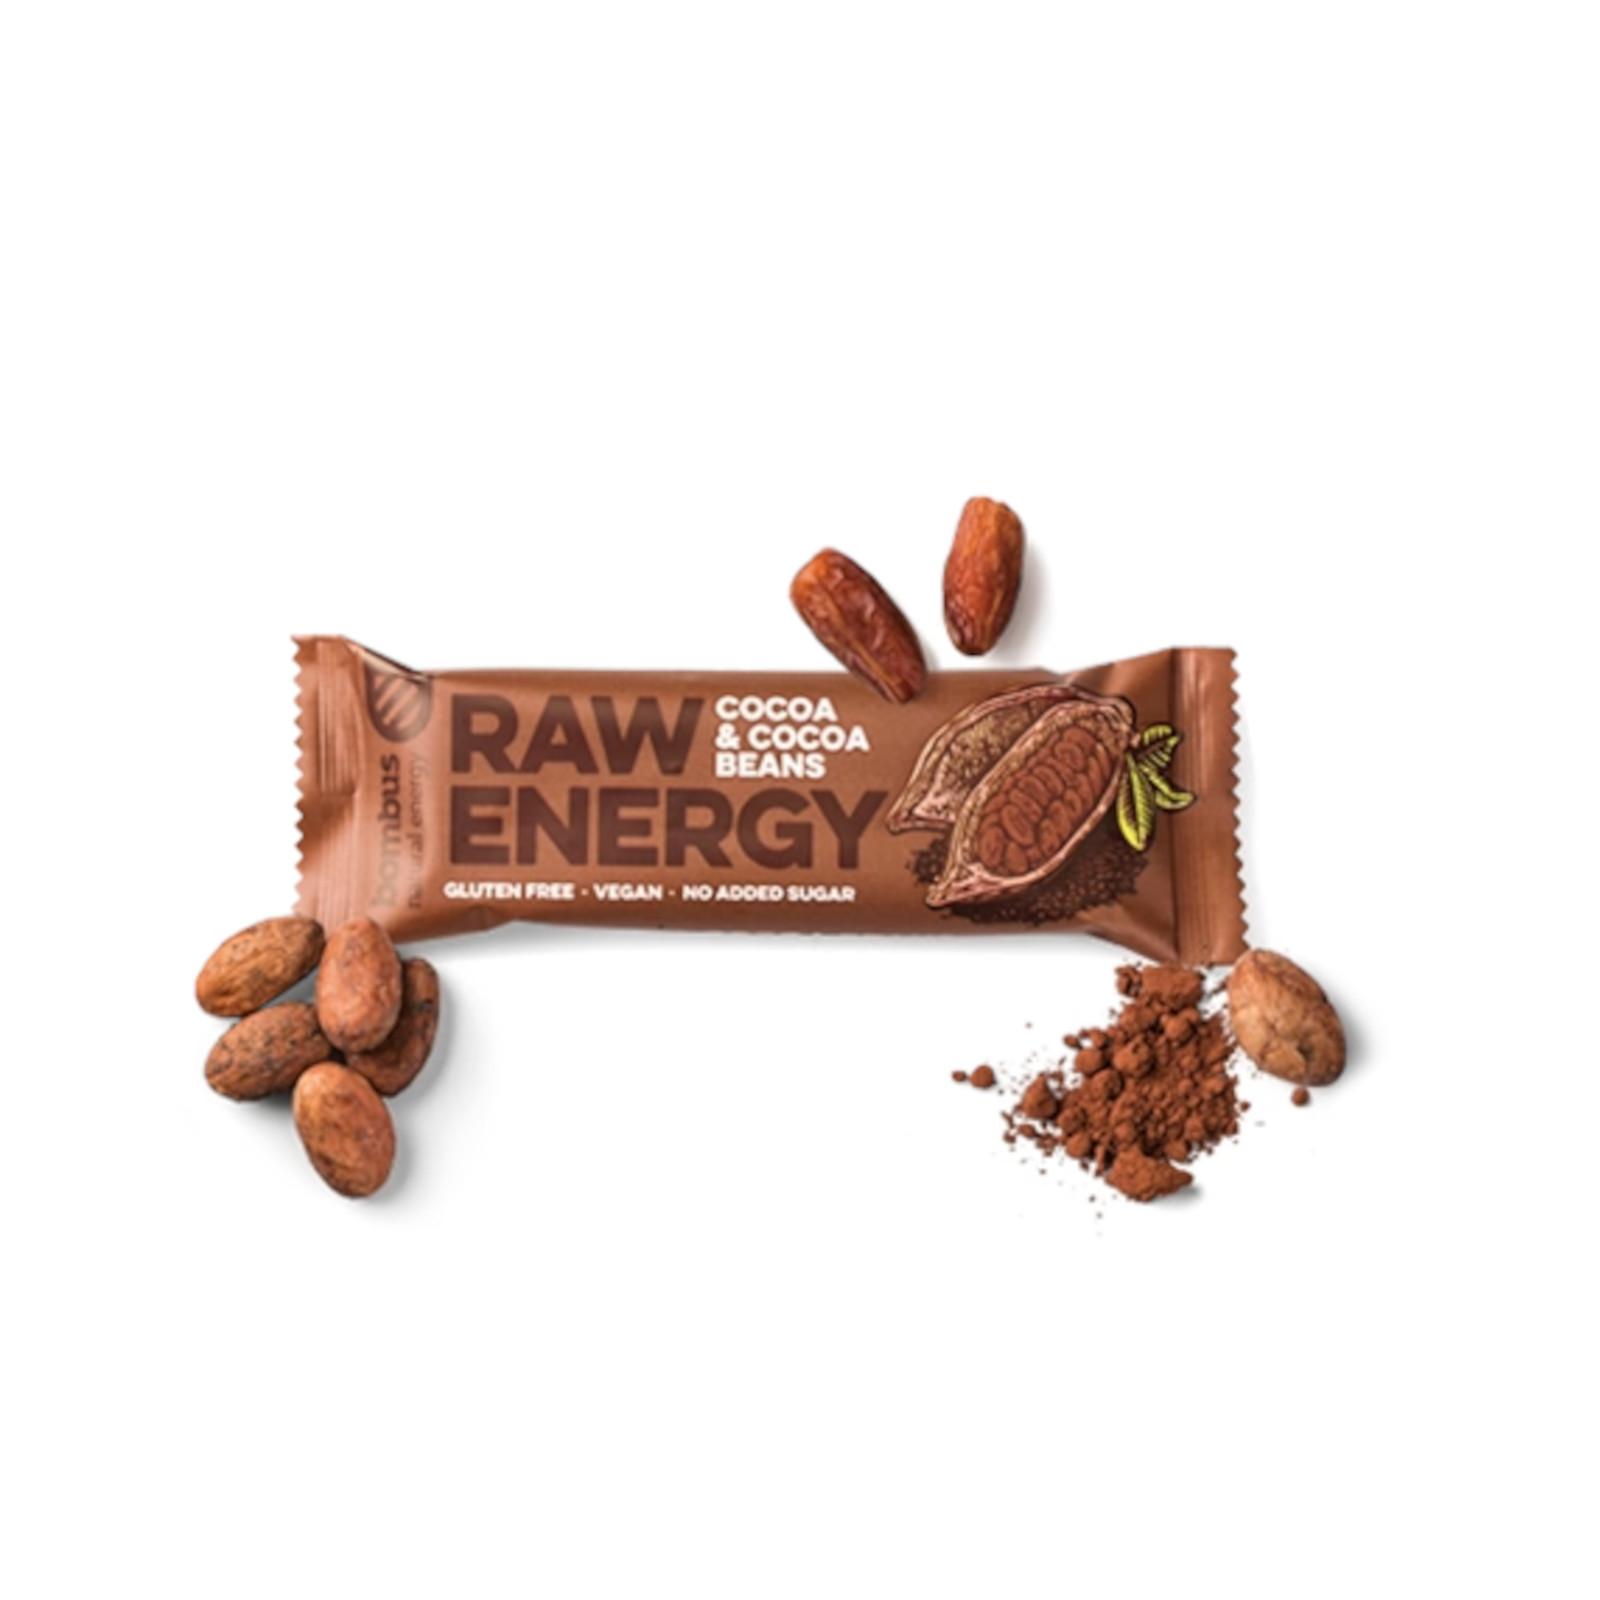 Bombus Raw energy-Cocoa beans 50 g